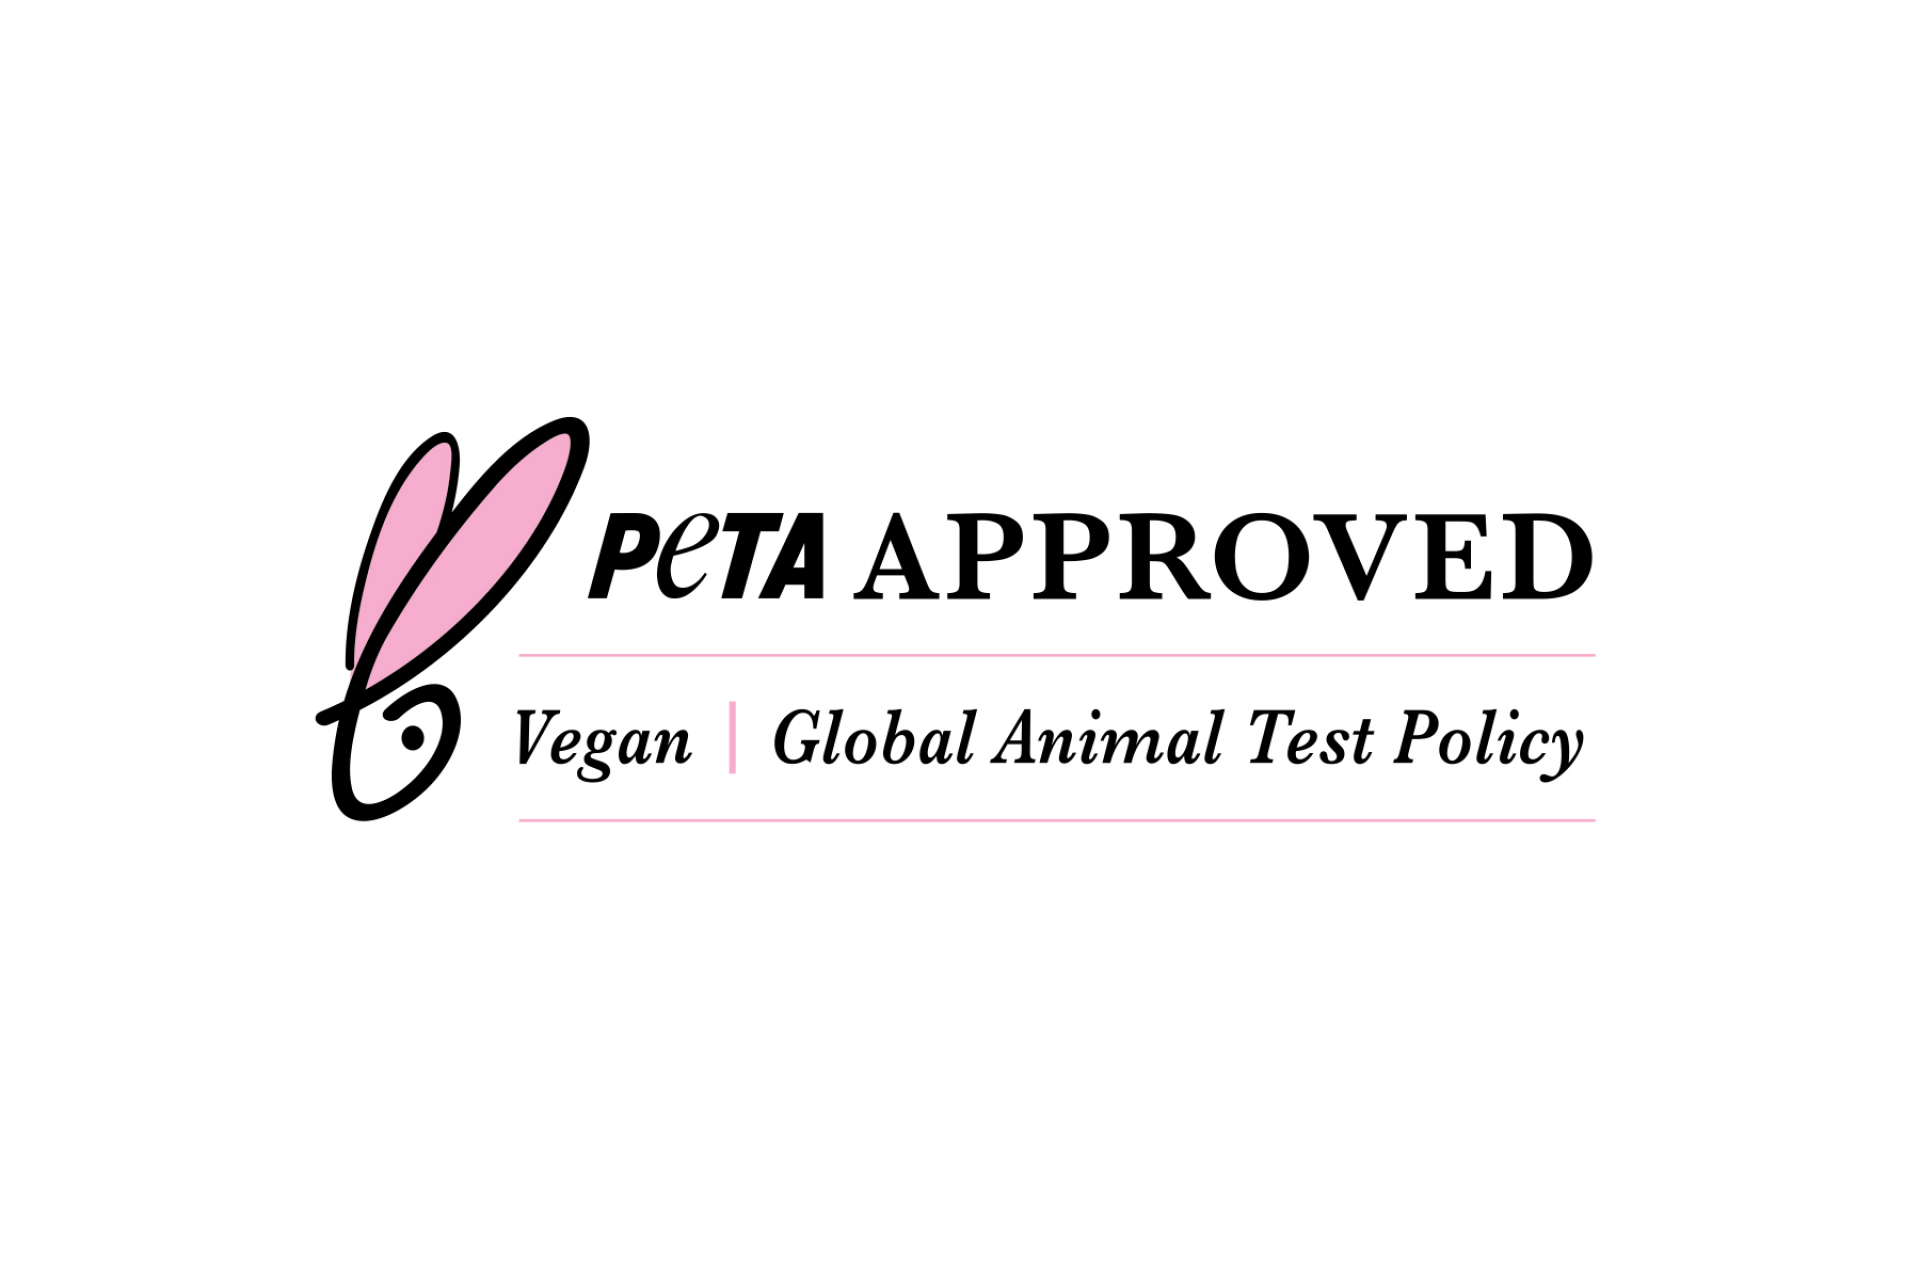 PETA cruelty-free - állatkísérletmentes minősítés!